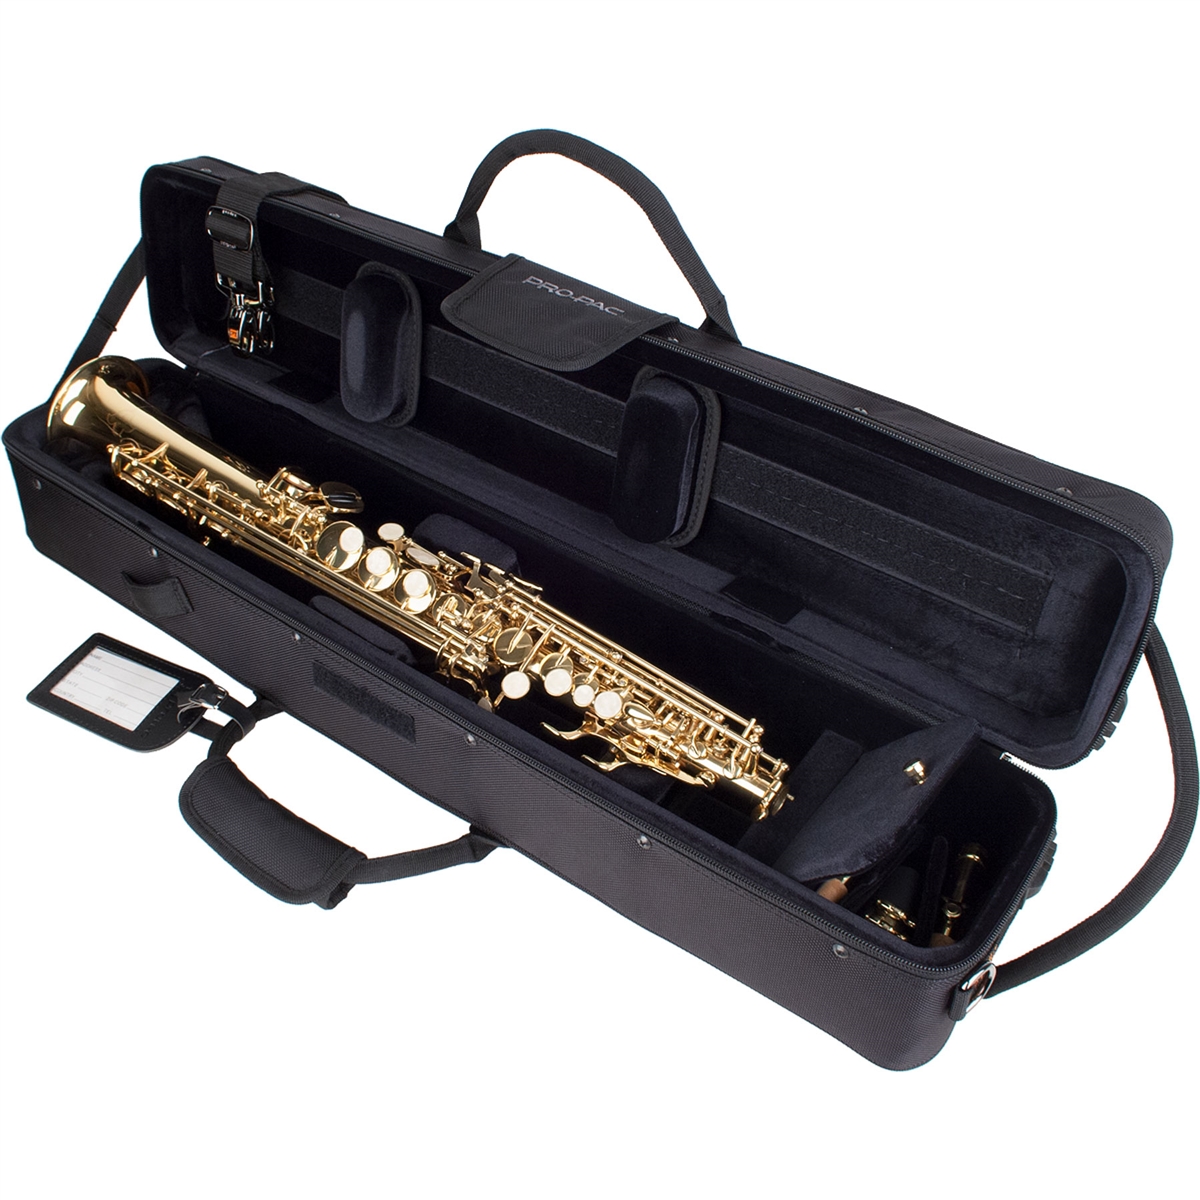 Protec PB310 Case for Soprano Sax